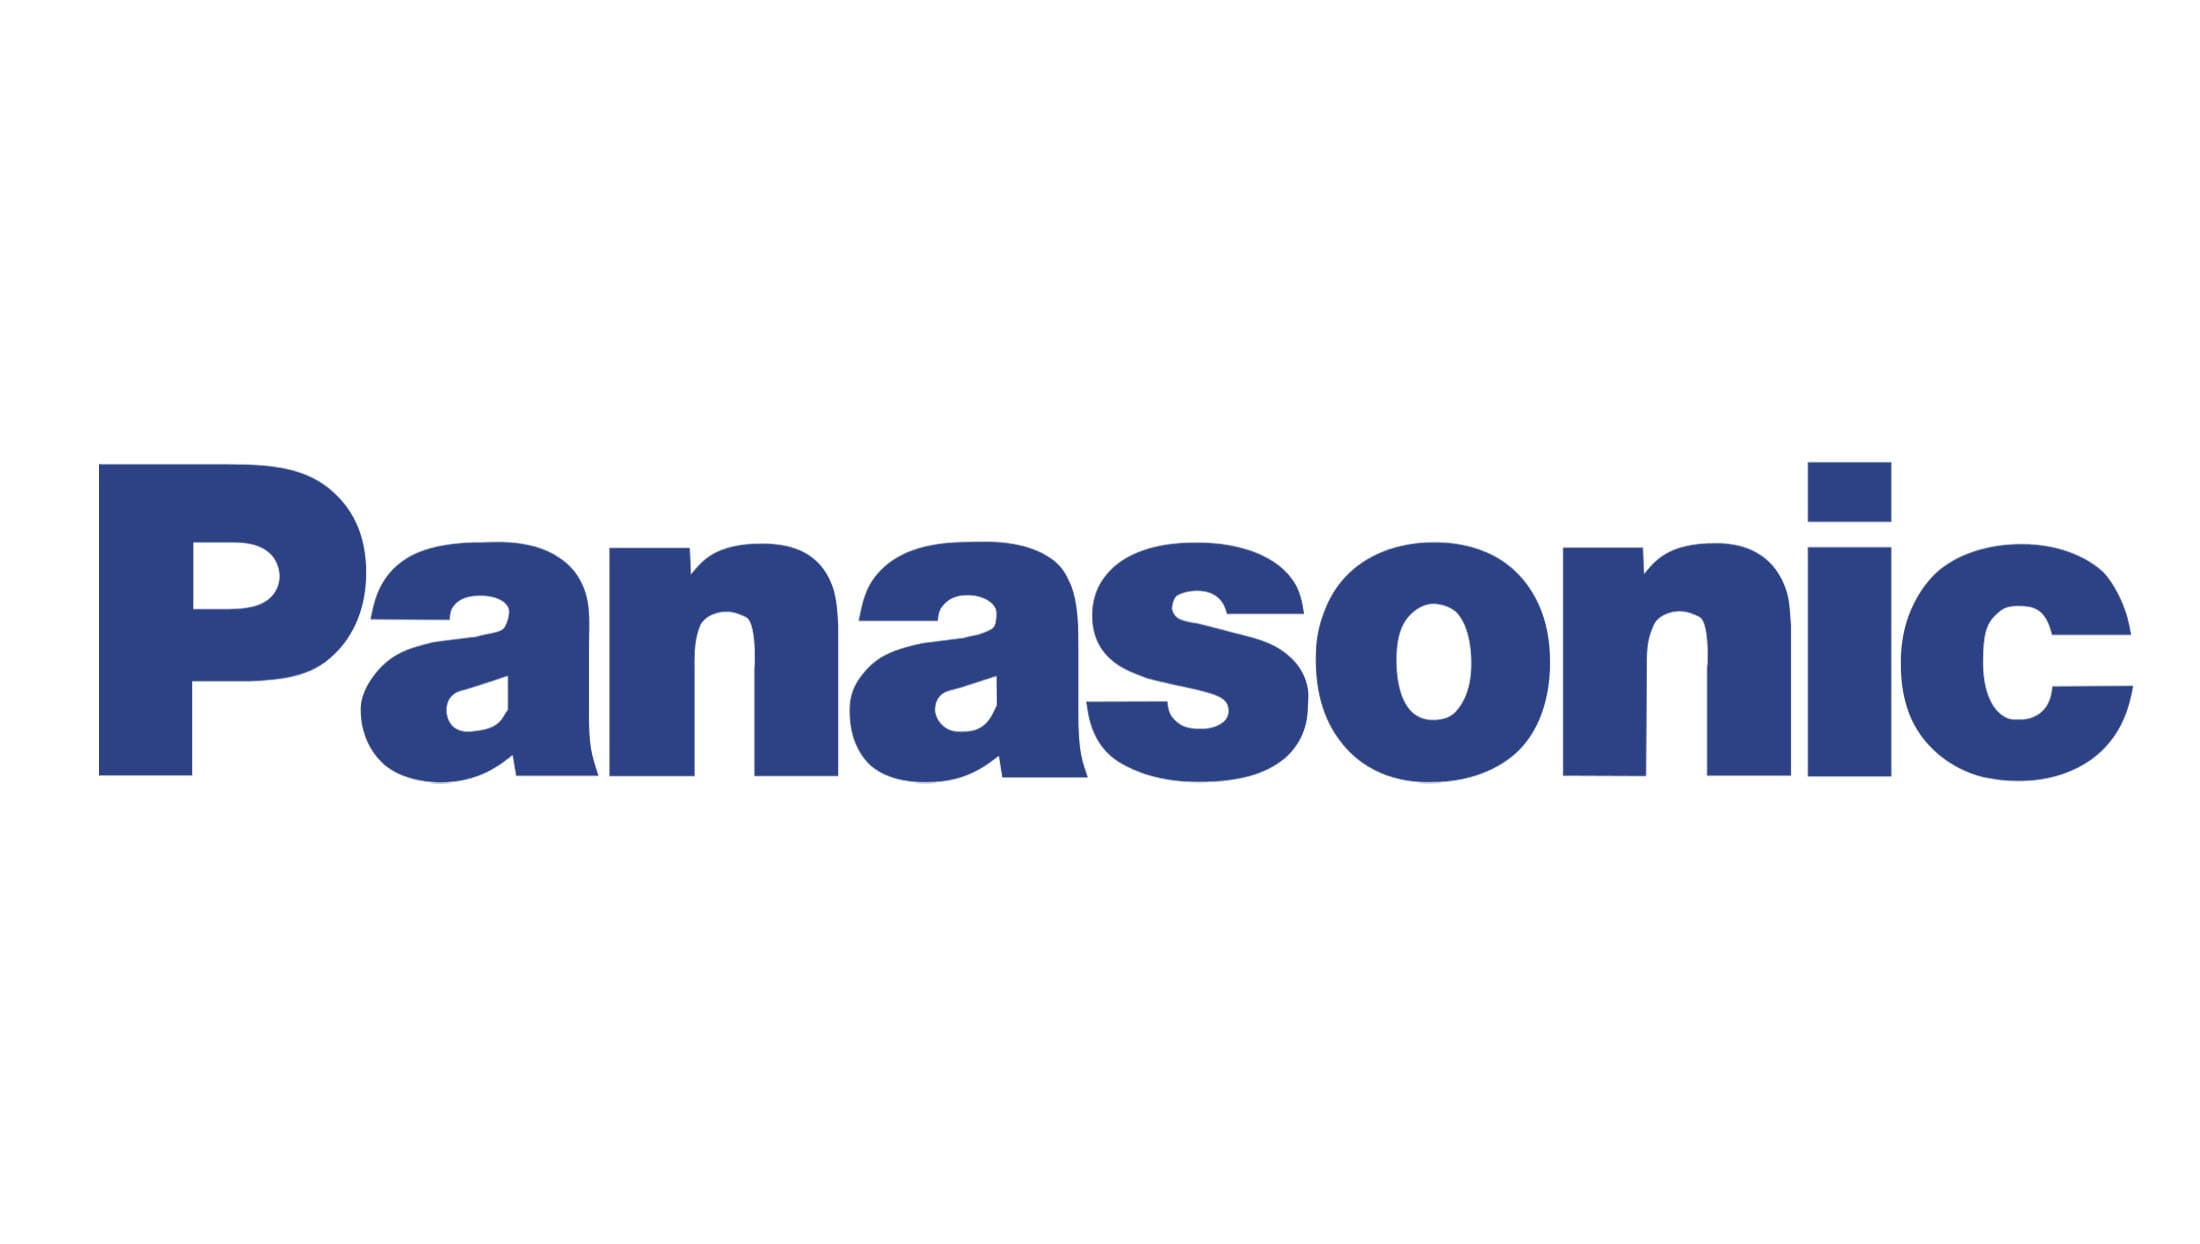 Panasonic marque panneau asiatique